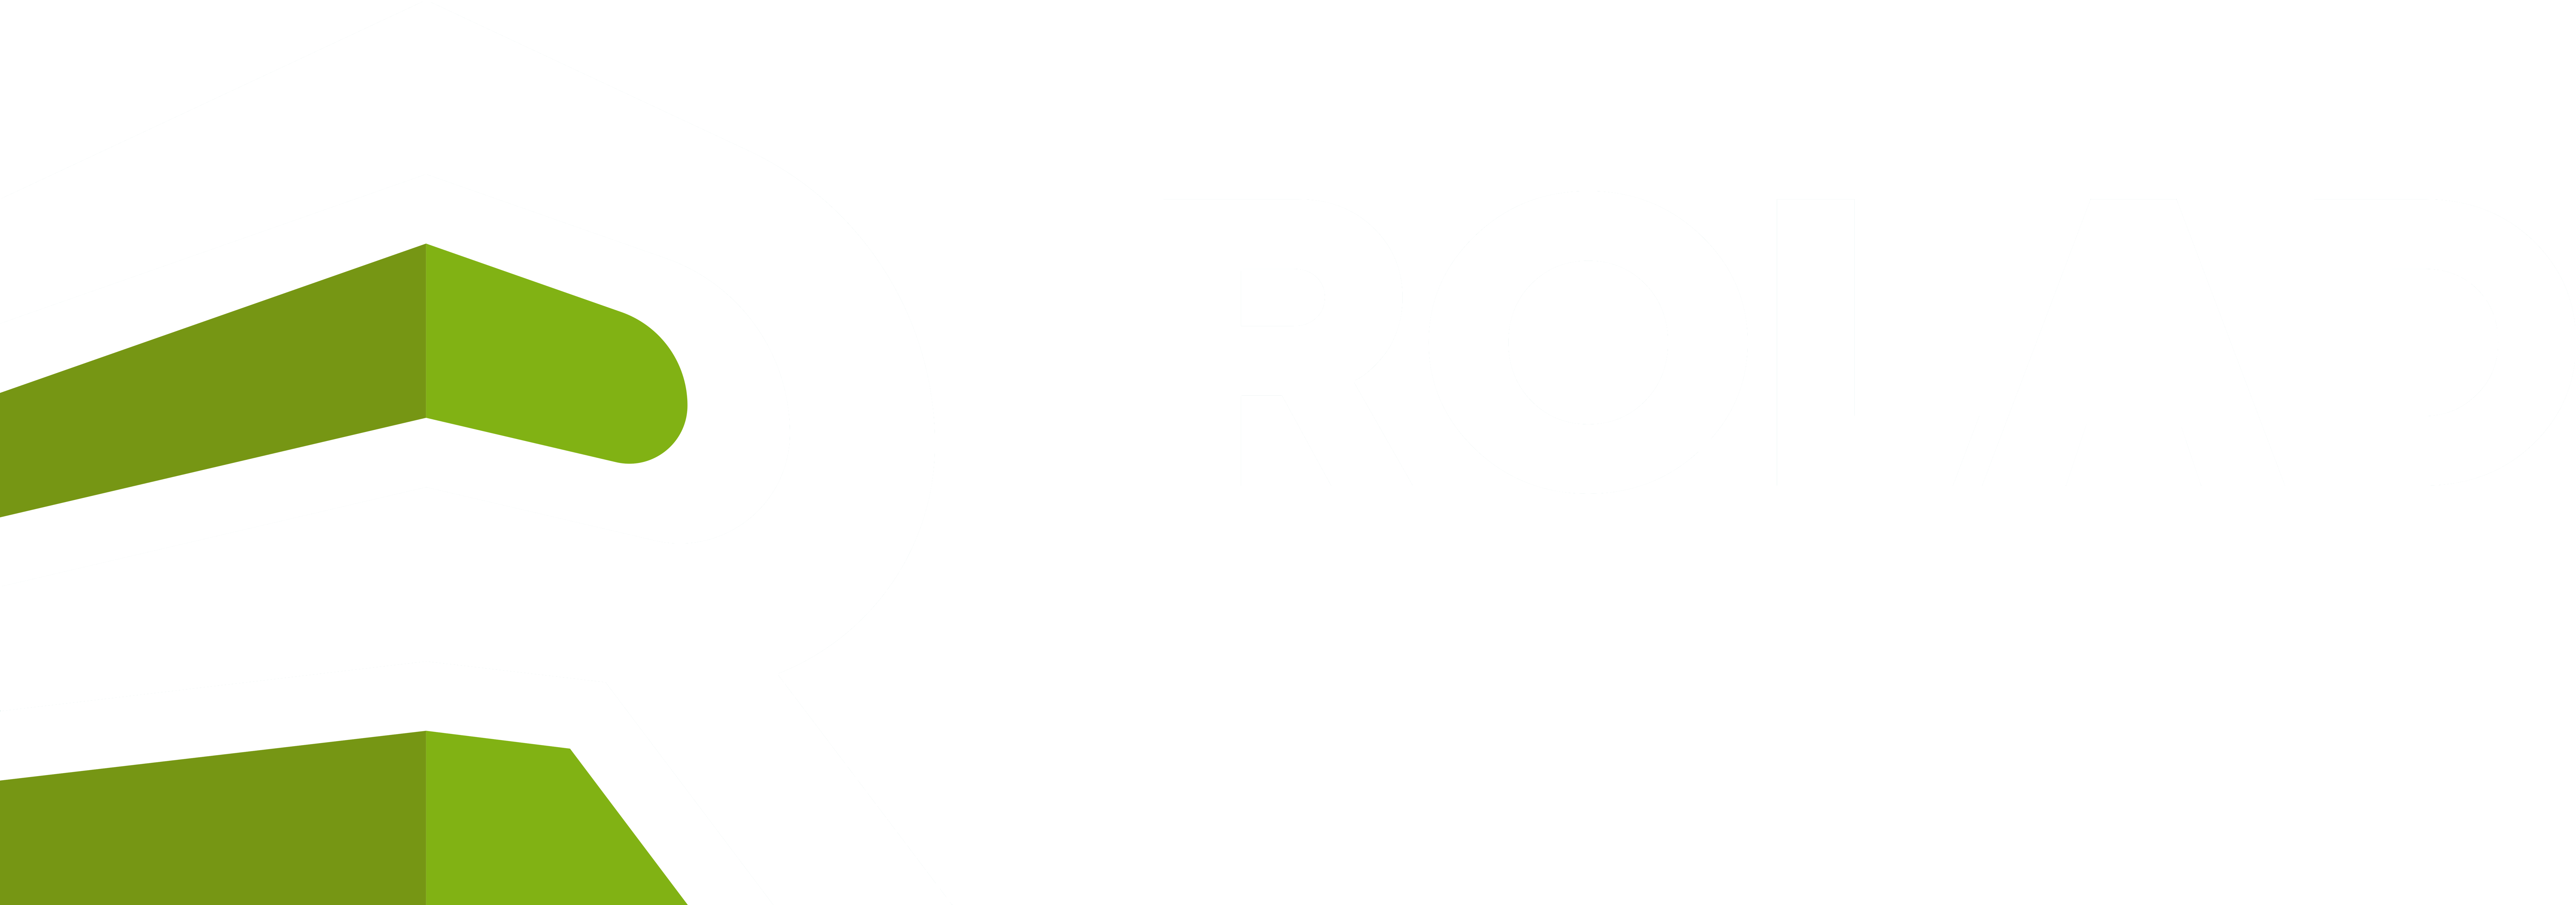 Rolad Properties